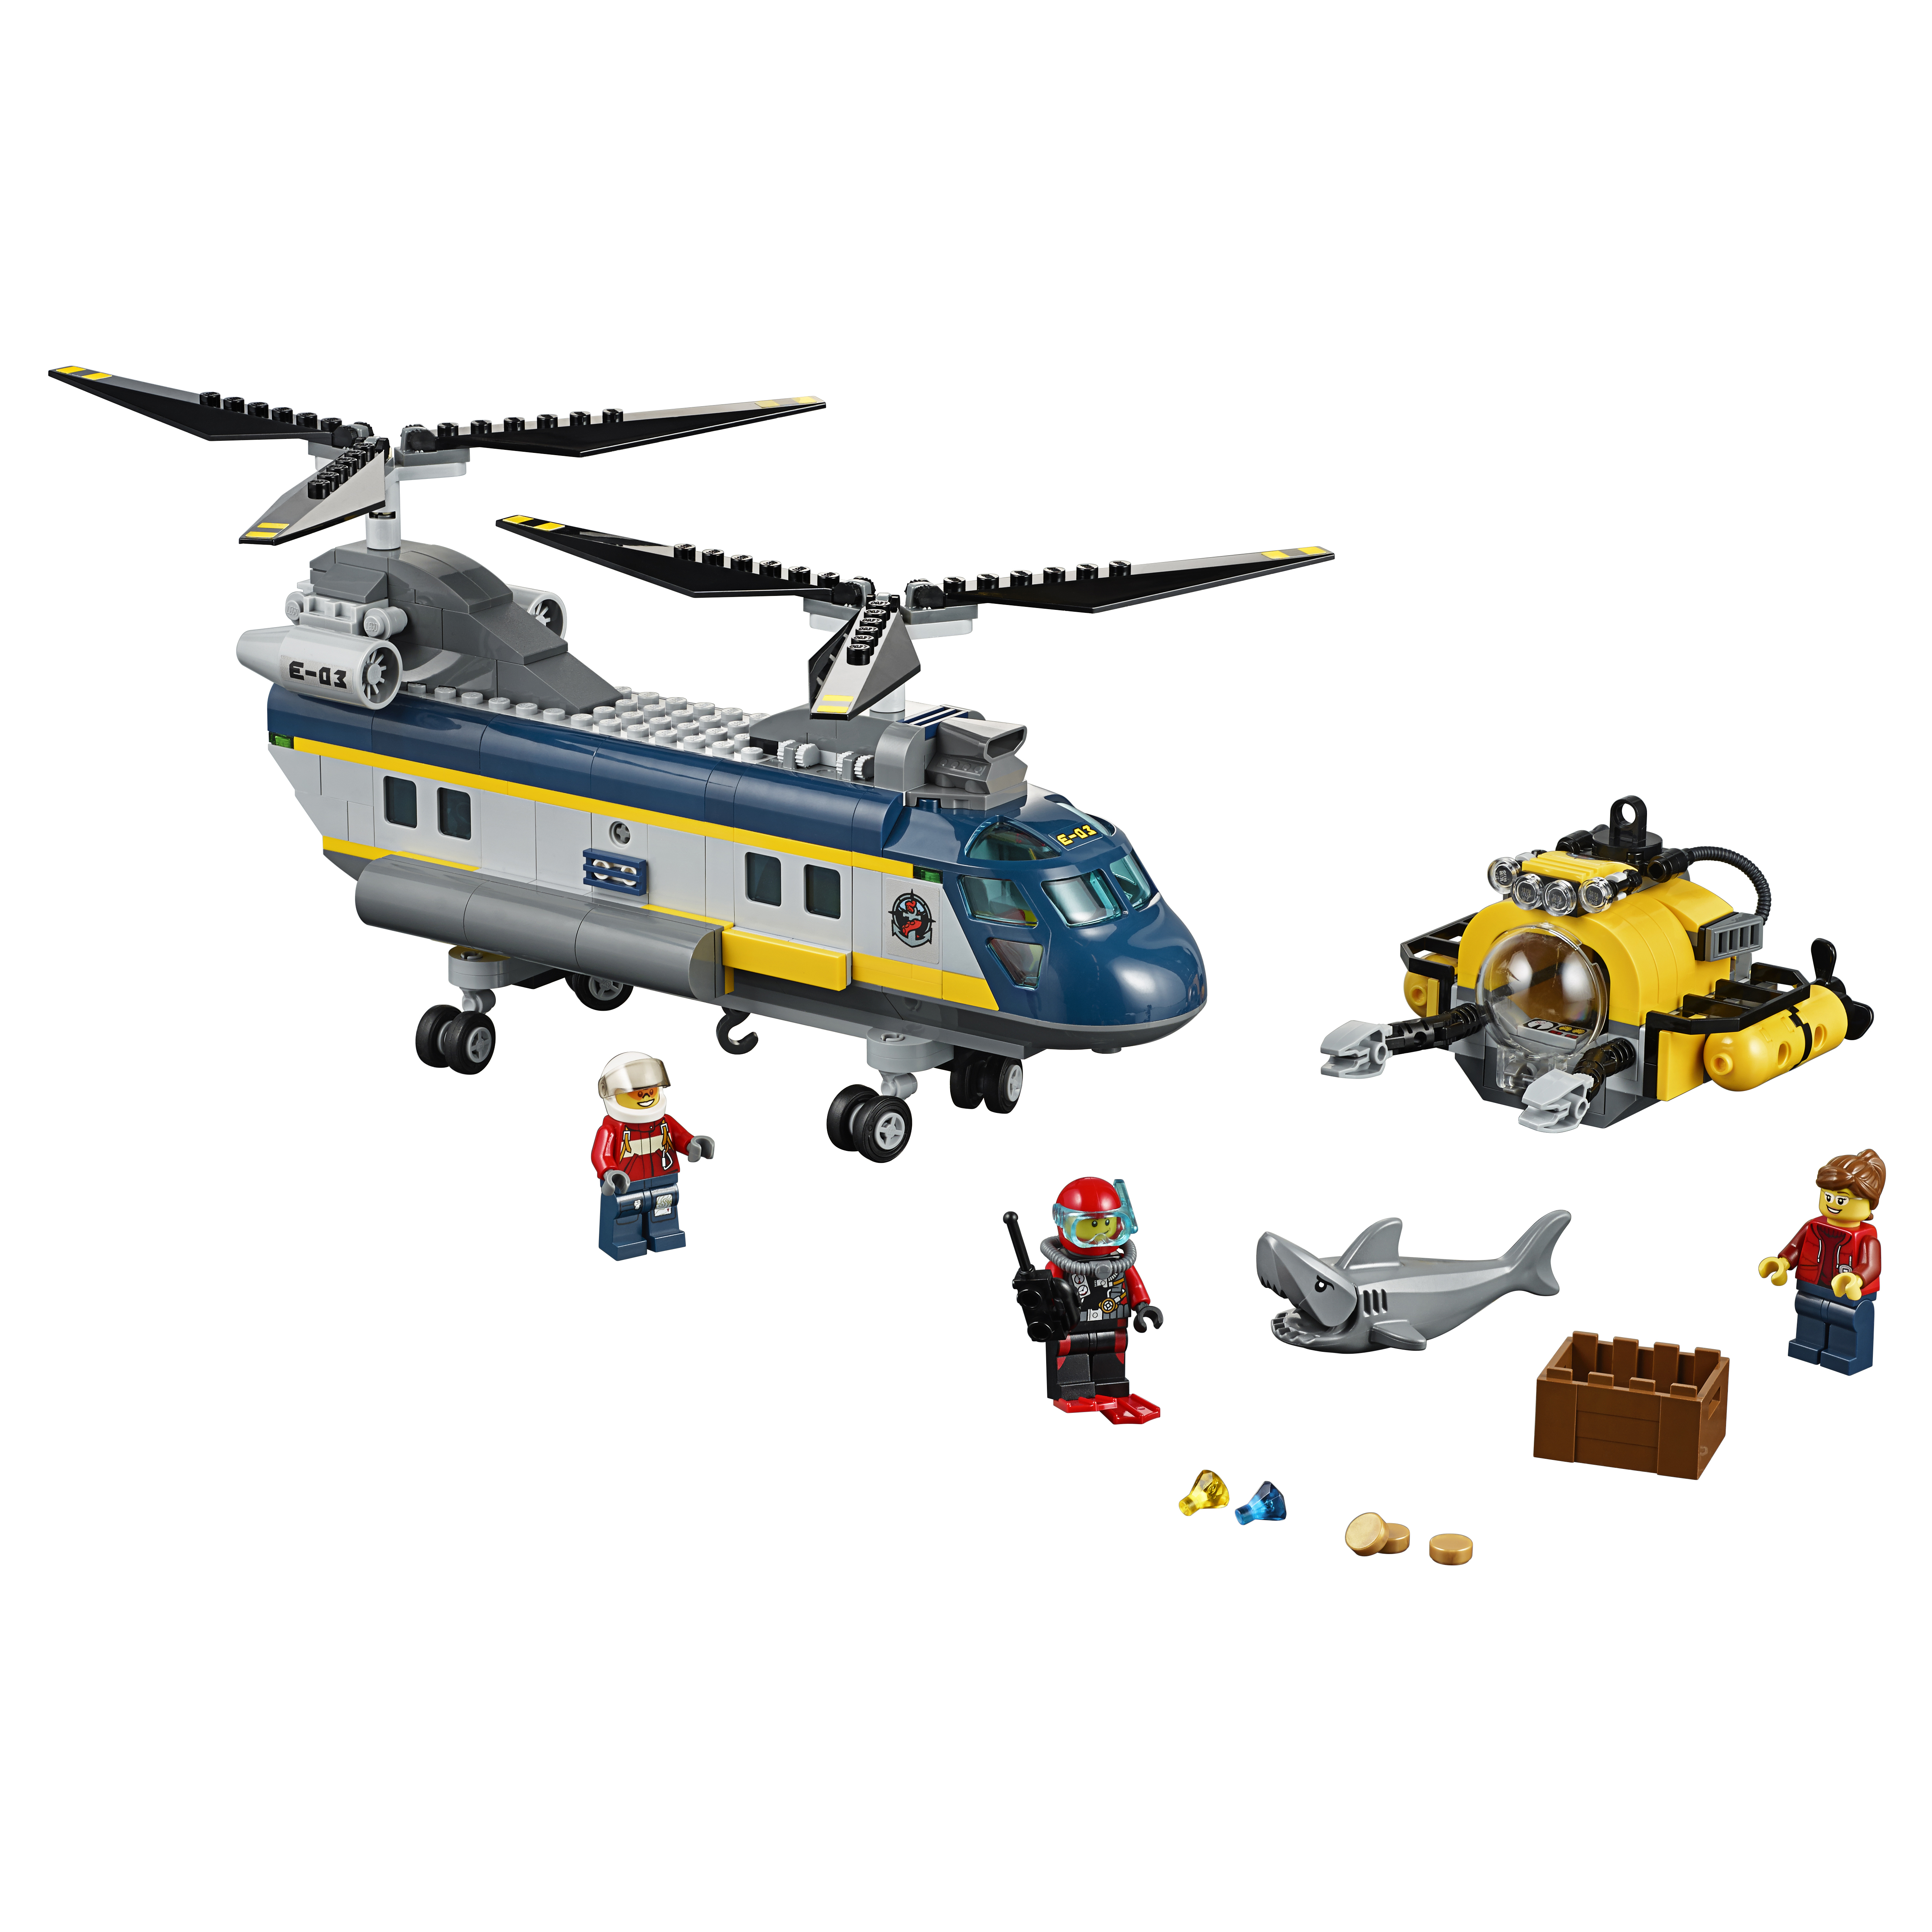 Купить Конструктор lego city deep sea explorers вертолет исследователей моря 60093, Конструктор LEGO City Deep Sea Explorers Вертолет исследователей моря (60093),